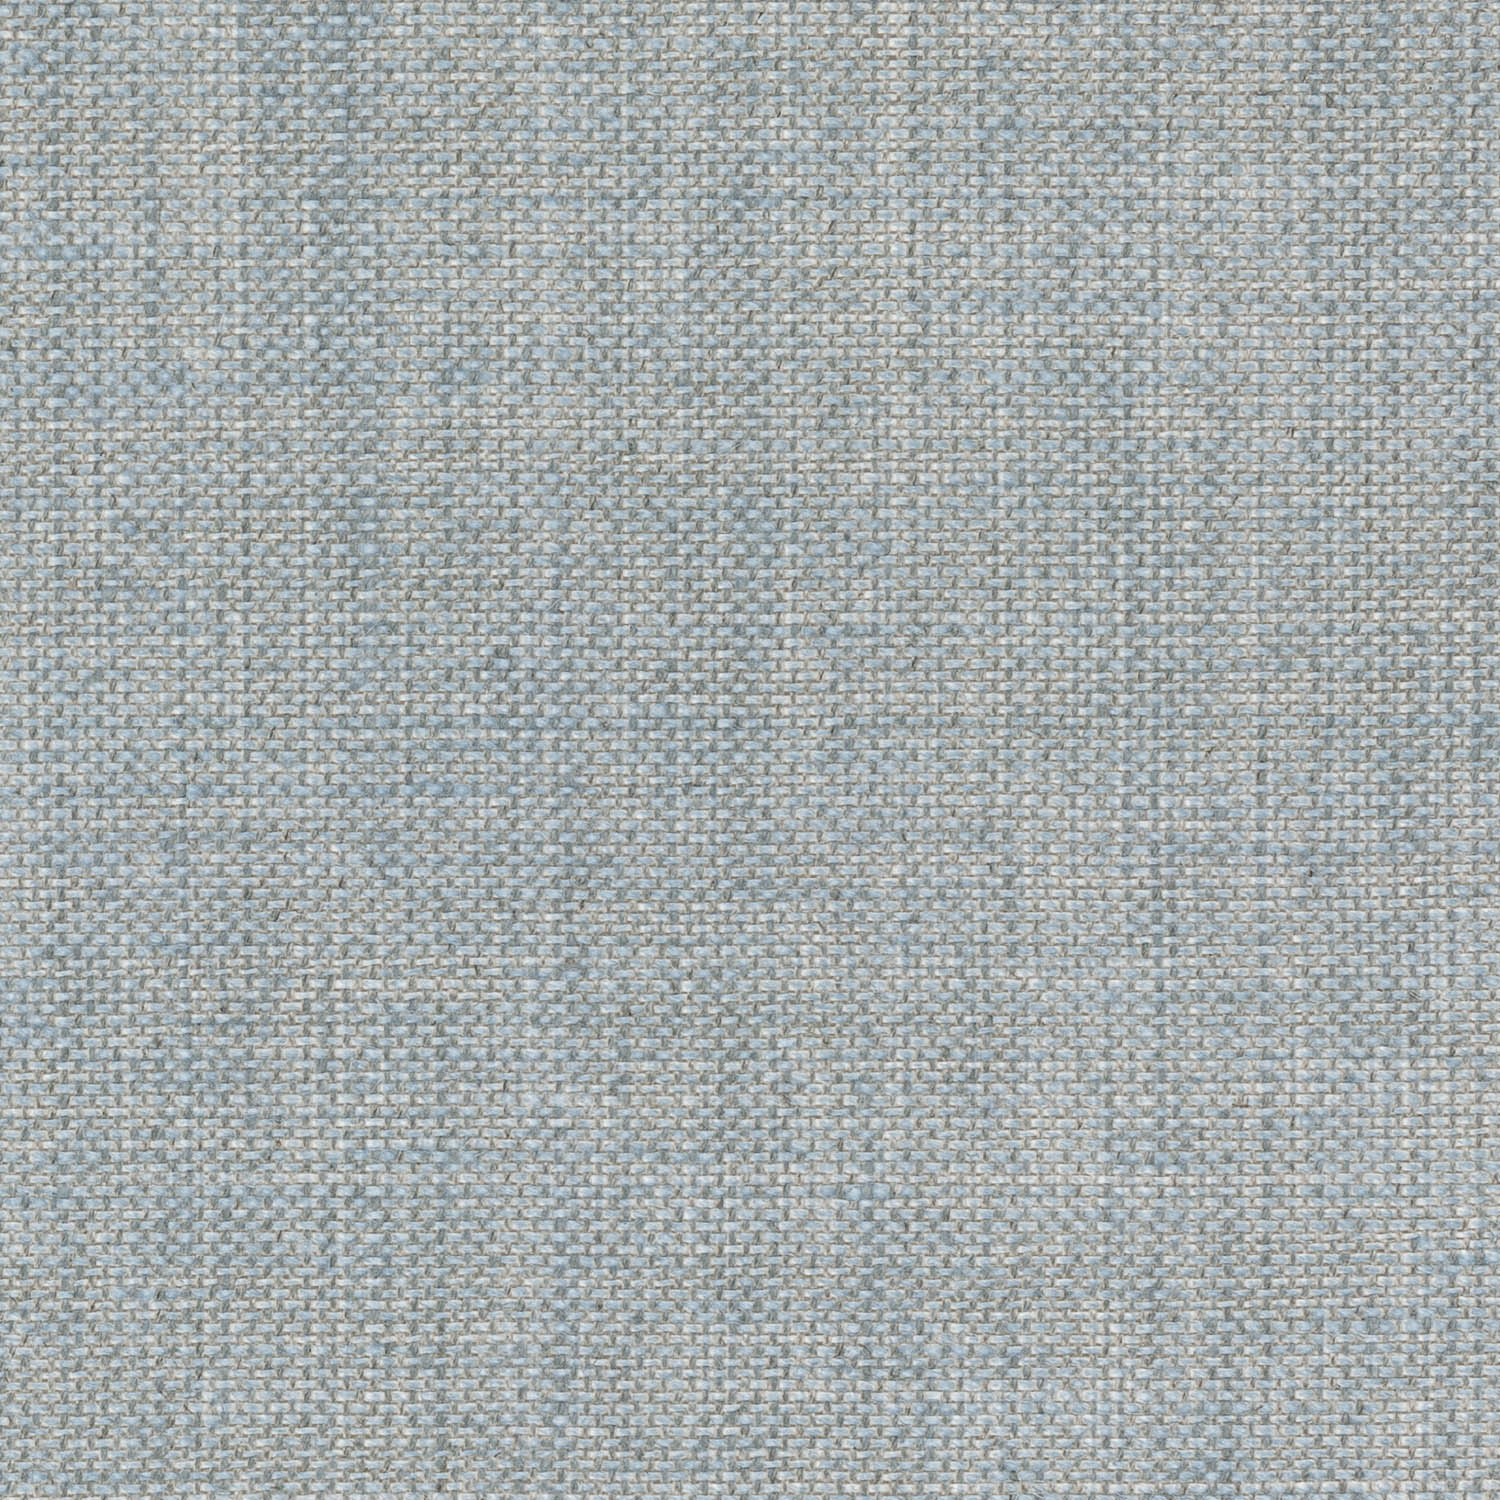 n-052-blue-plain-linen-heron-1.jpg